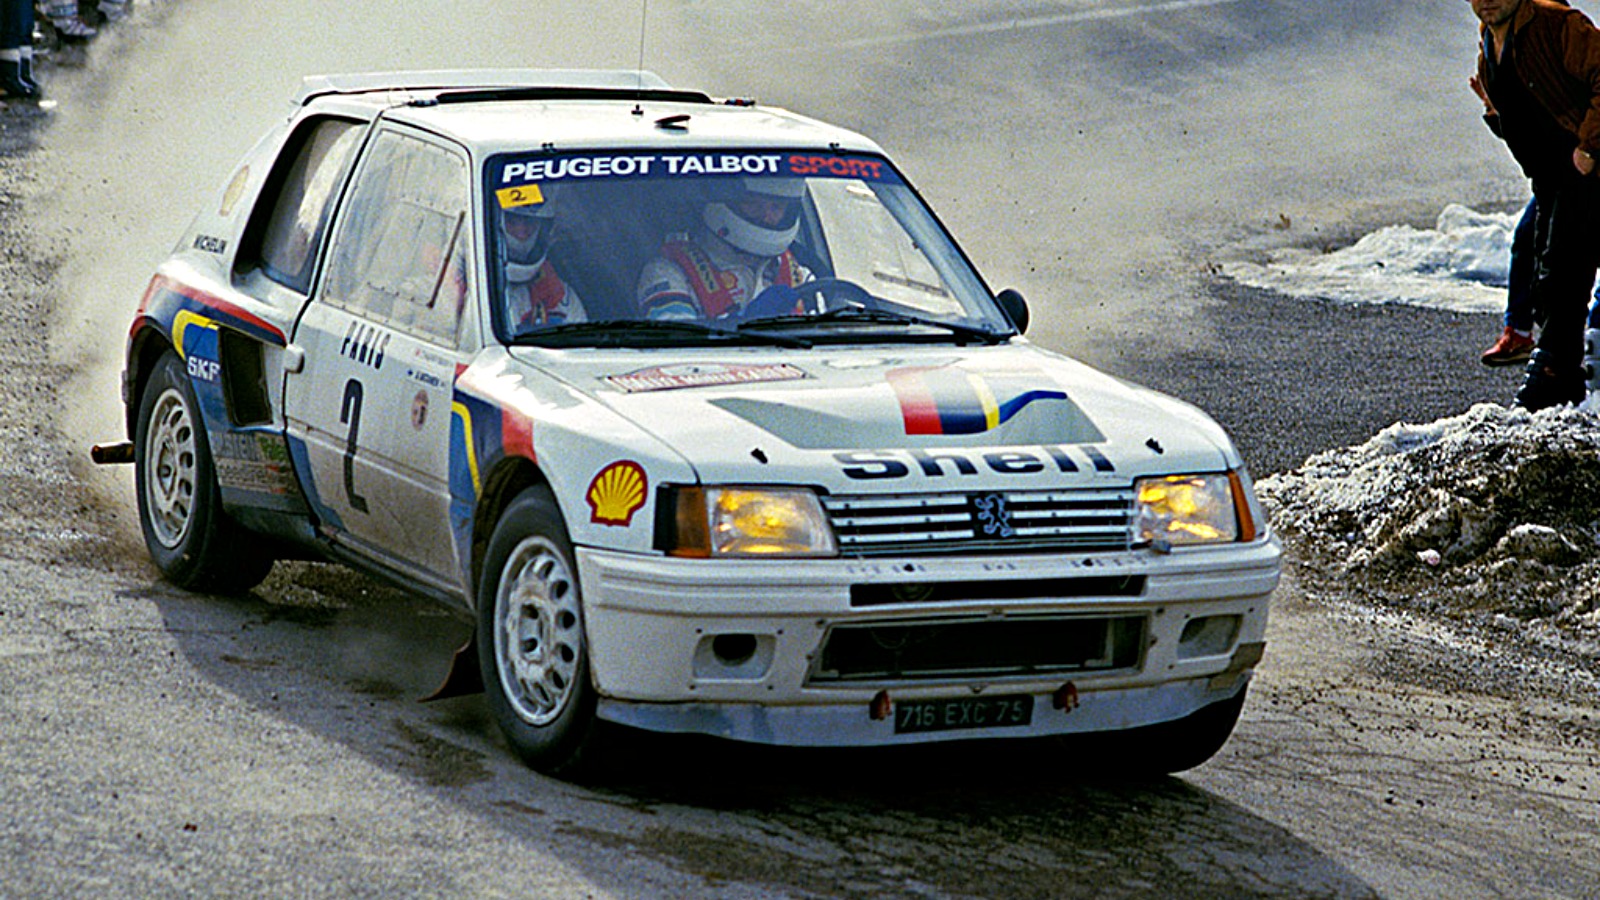 El Peugeot 205 T16 fue el que cambió las condiciones. Al tener un motor de menos de 2 litros, podía correr con 200 kilos menos. Así supero a Audi y Lancia y los impulsó a desarrollar autos nuevos